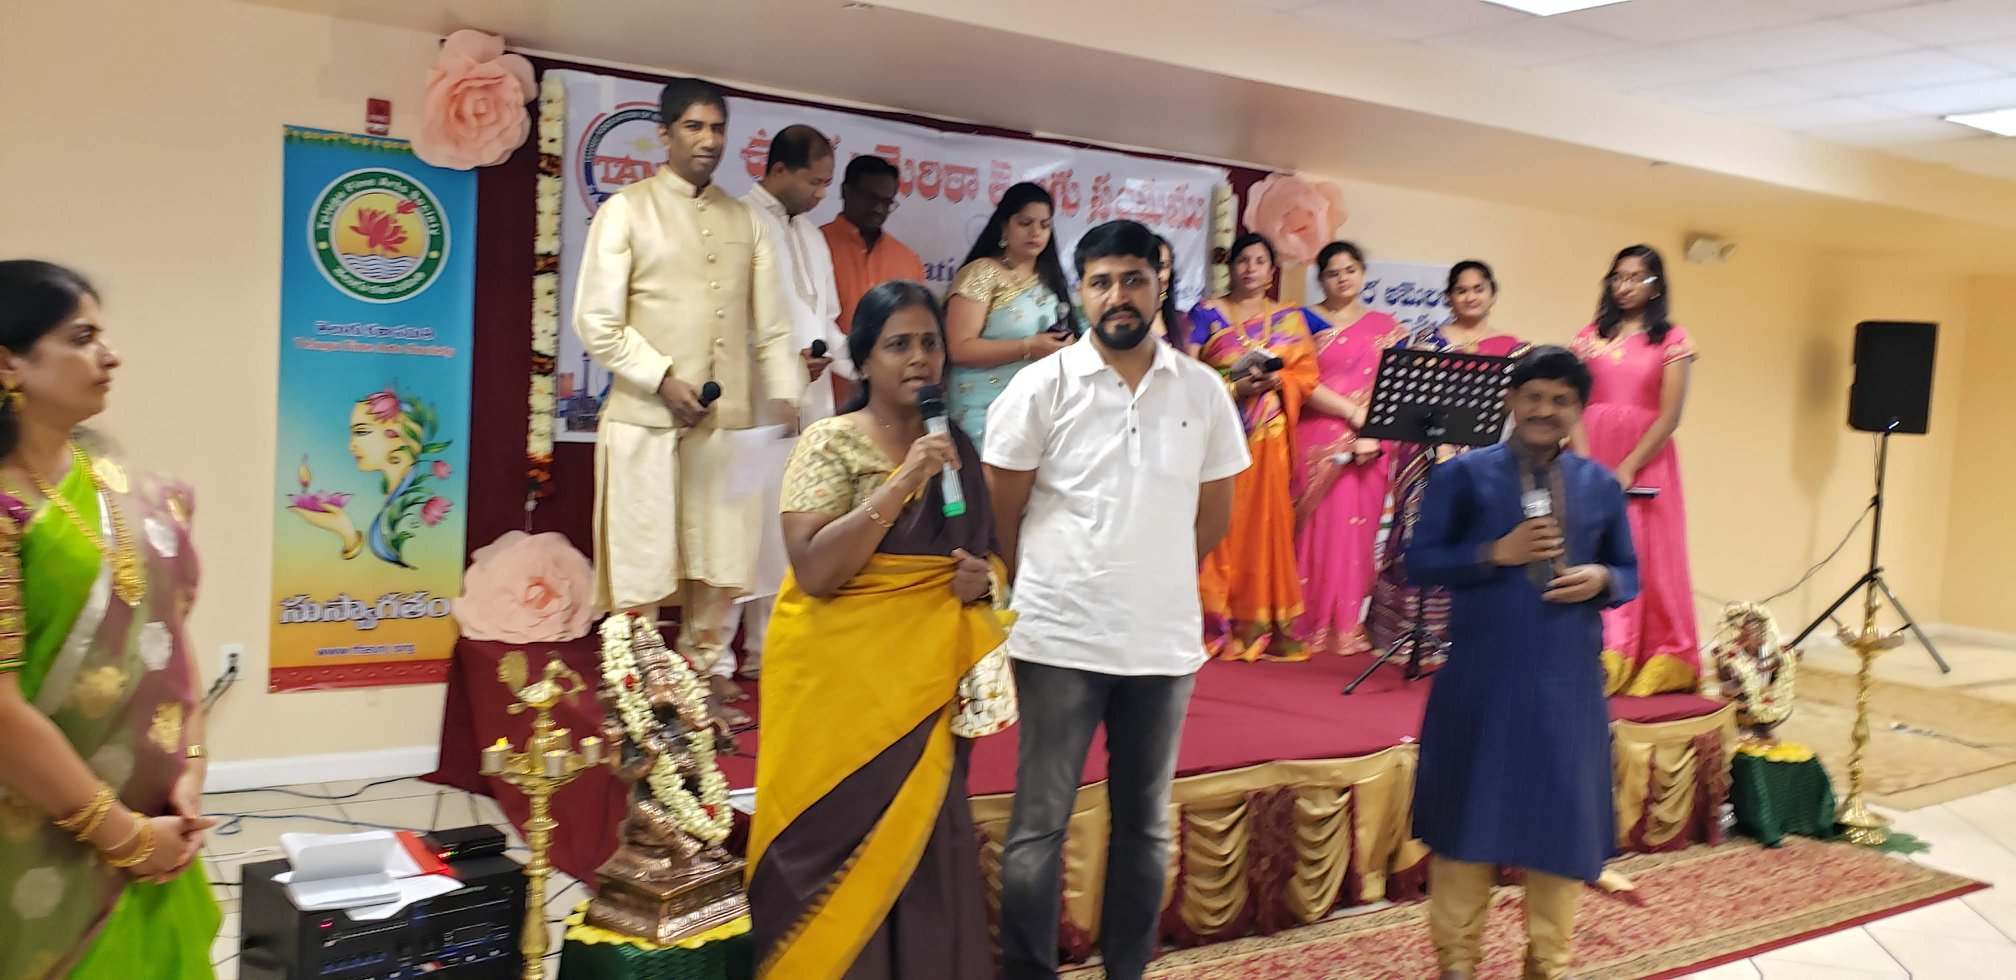 న్యూజెర్సిలో 'తానా' సంగీత శిక్షణ తరగతులు జయప్రదం